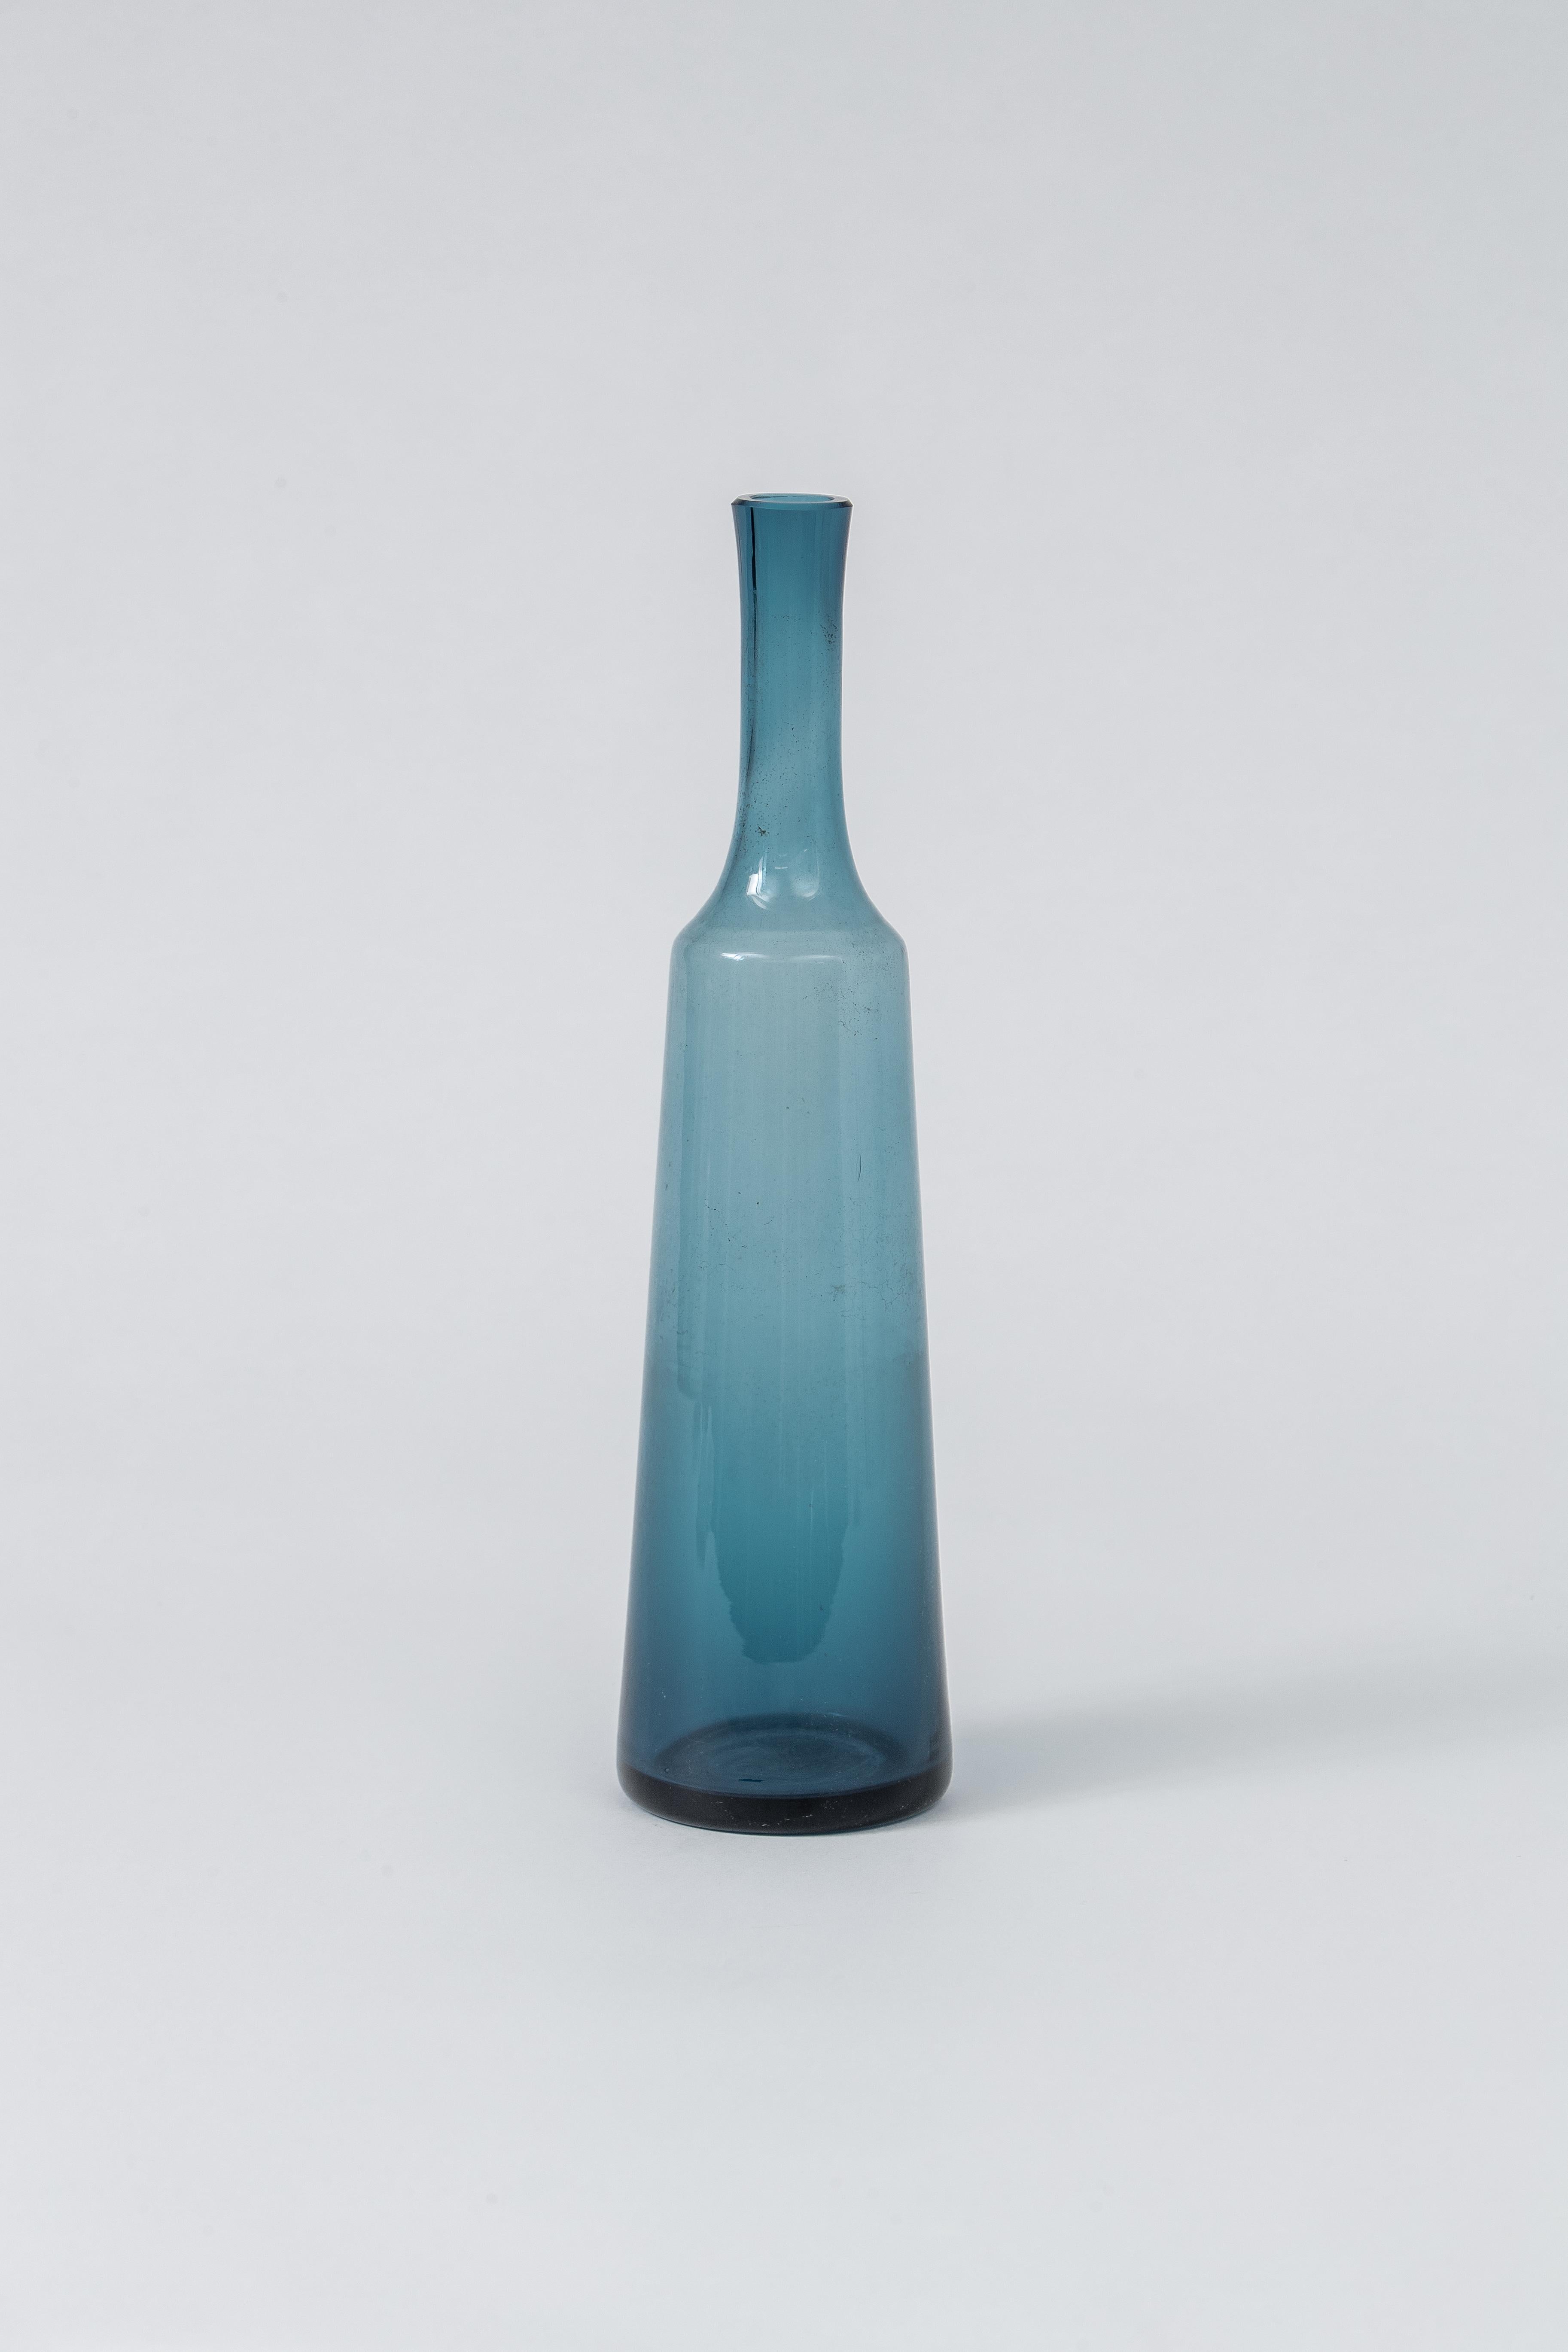 Handsome blue bottle by Holmegaard of Denmark.